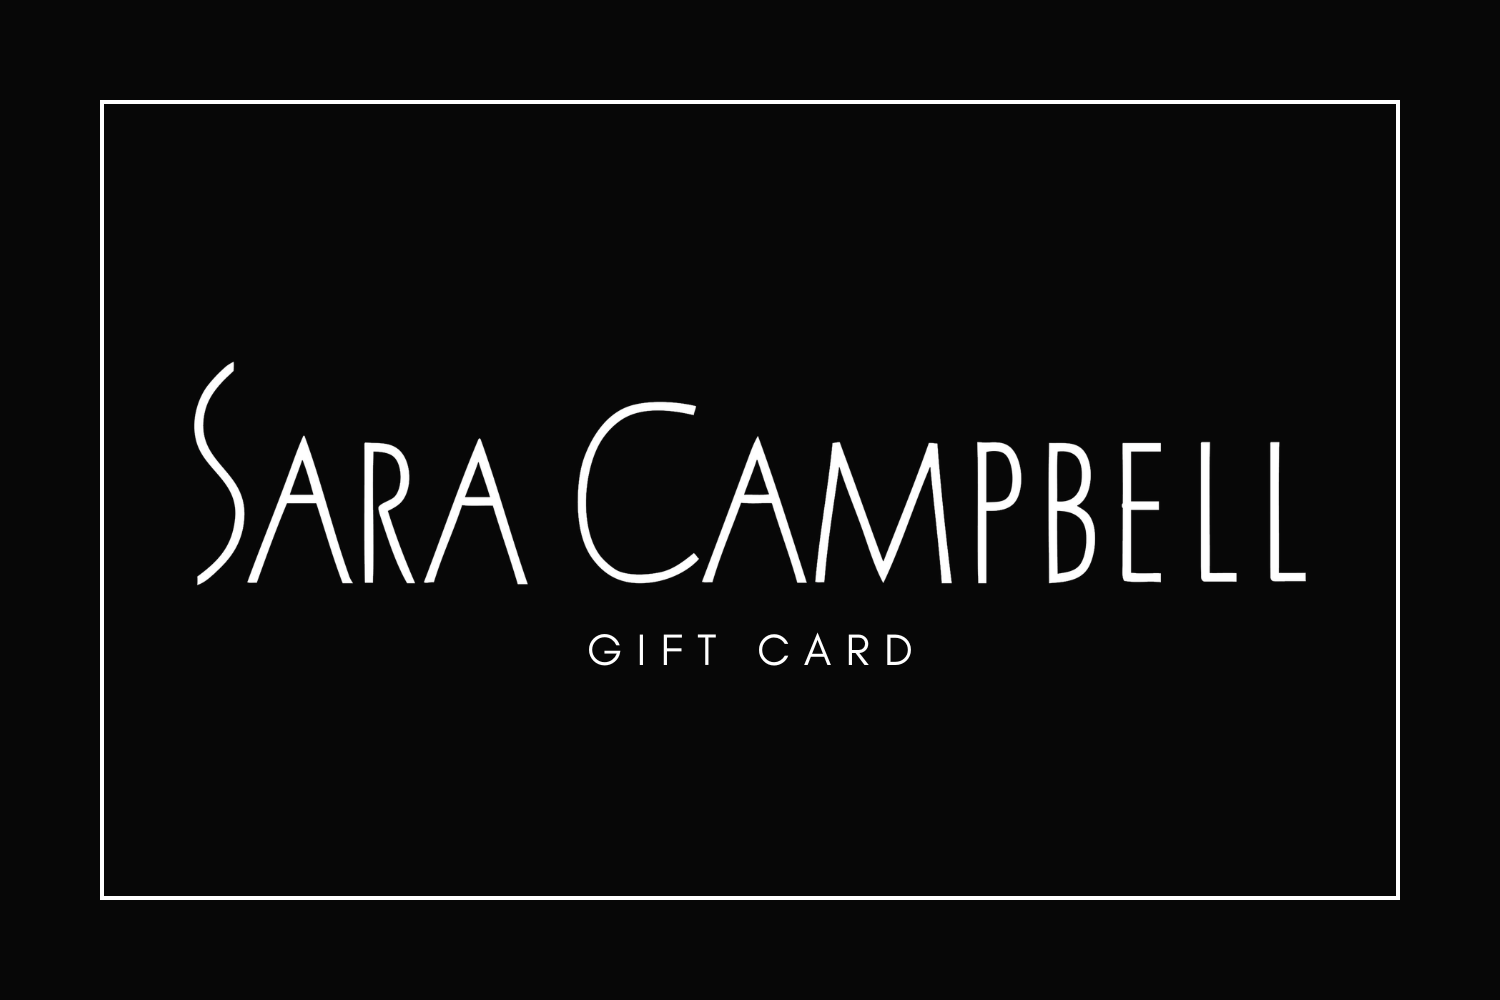 Sara Campbell gift card